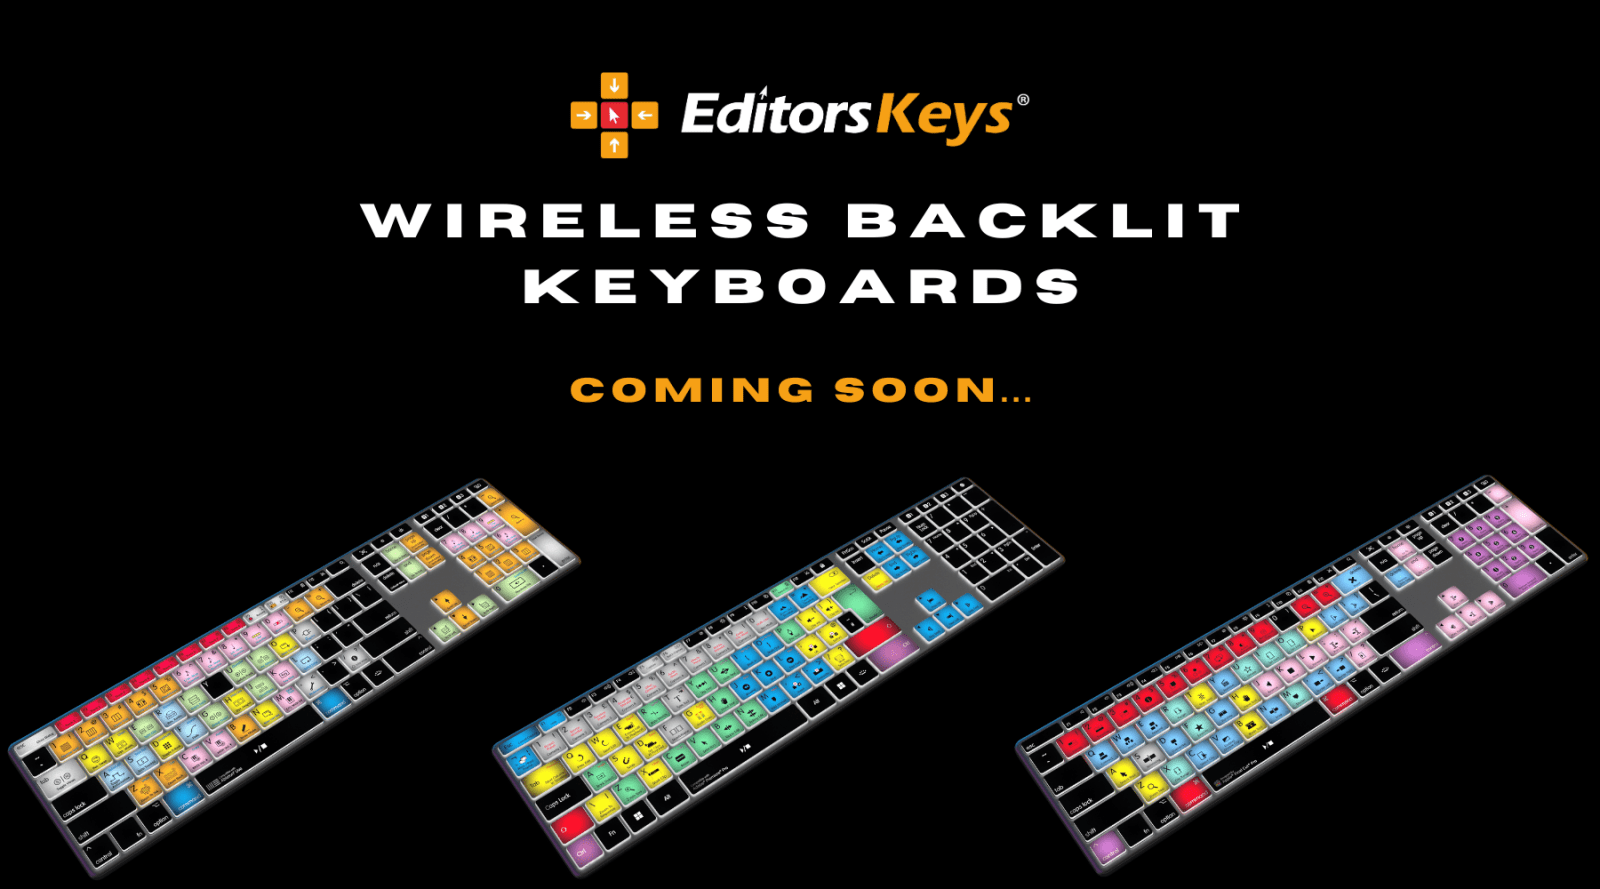 Editors Keys Wireless Backlit Keyboards - COMING SOON! - Editors Keys